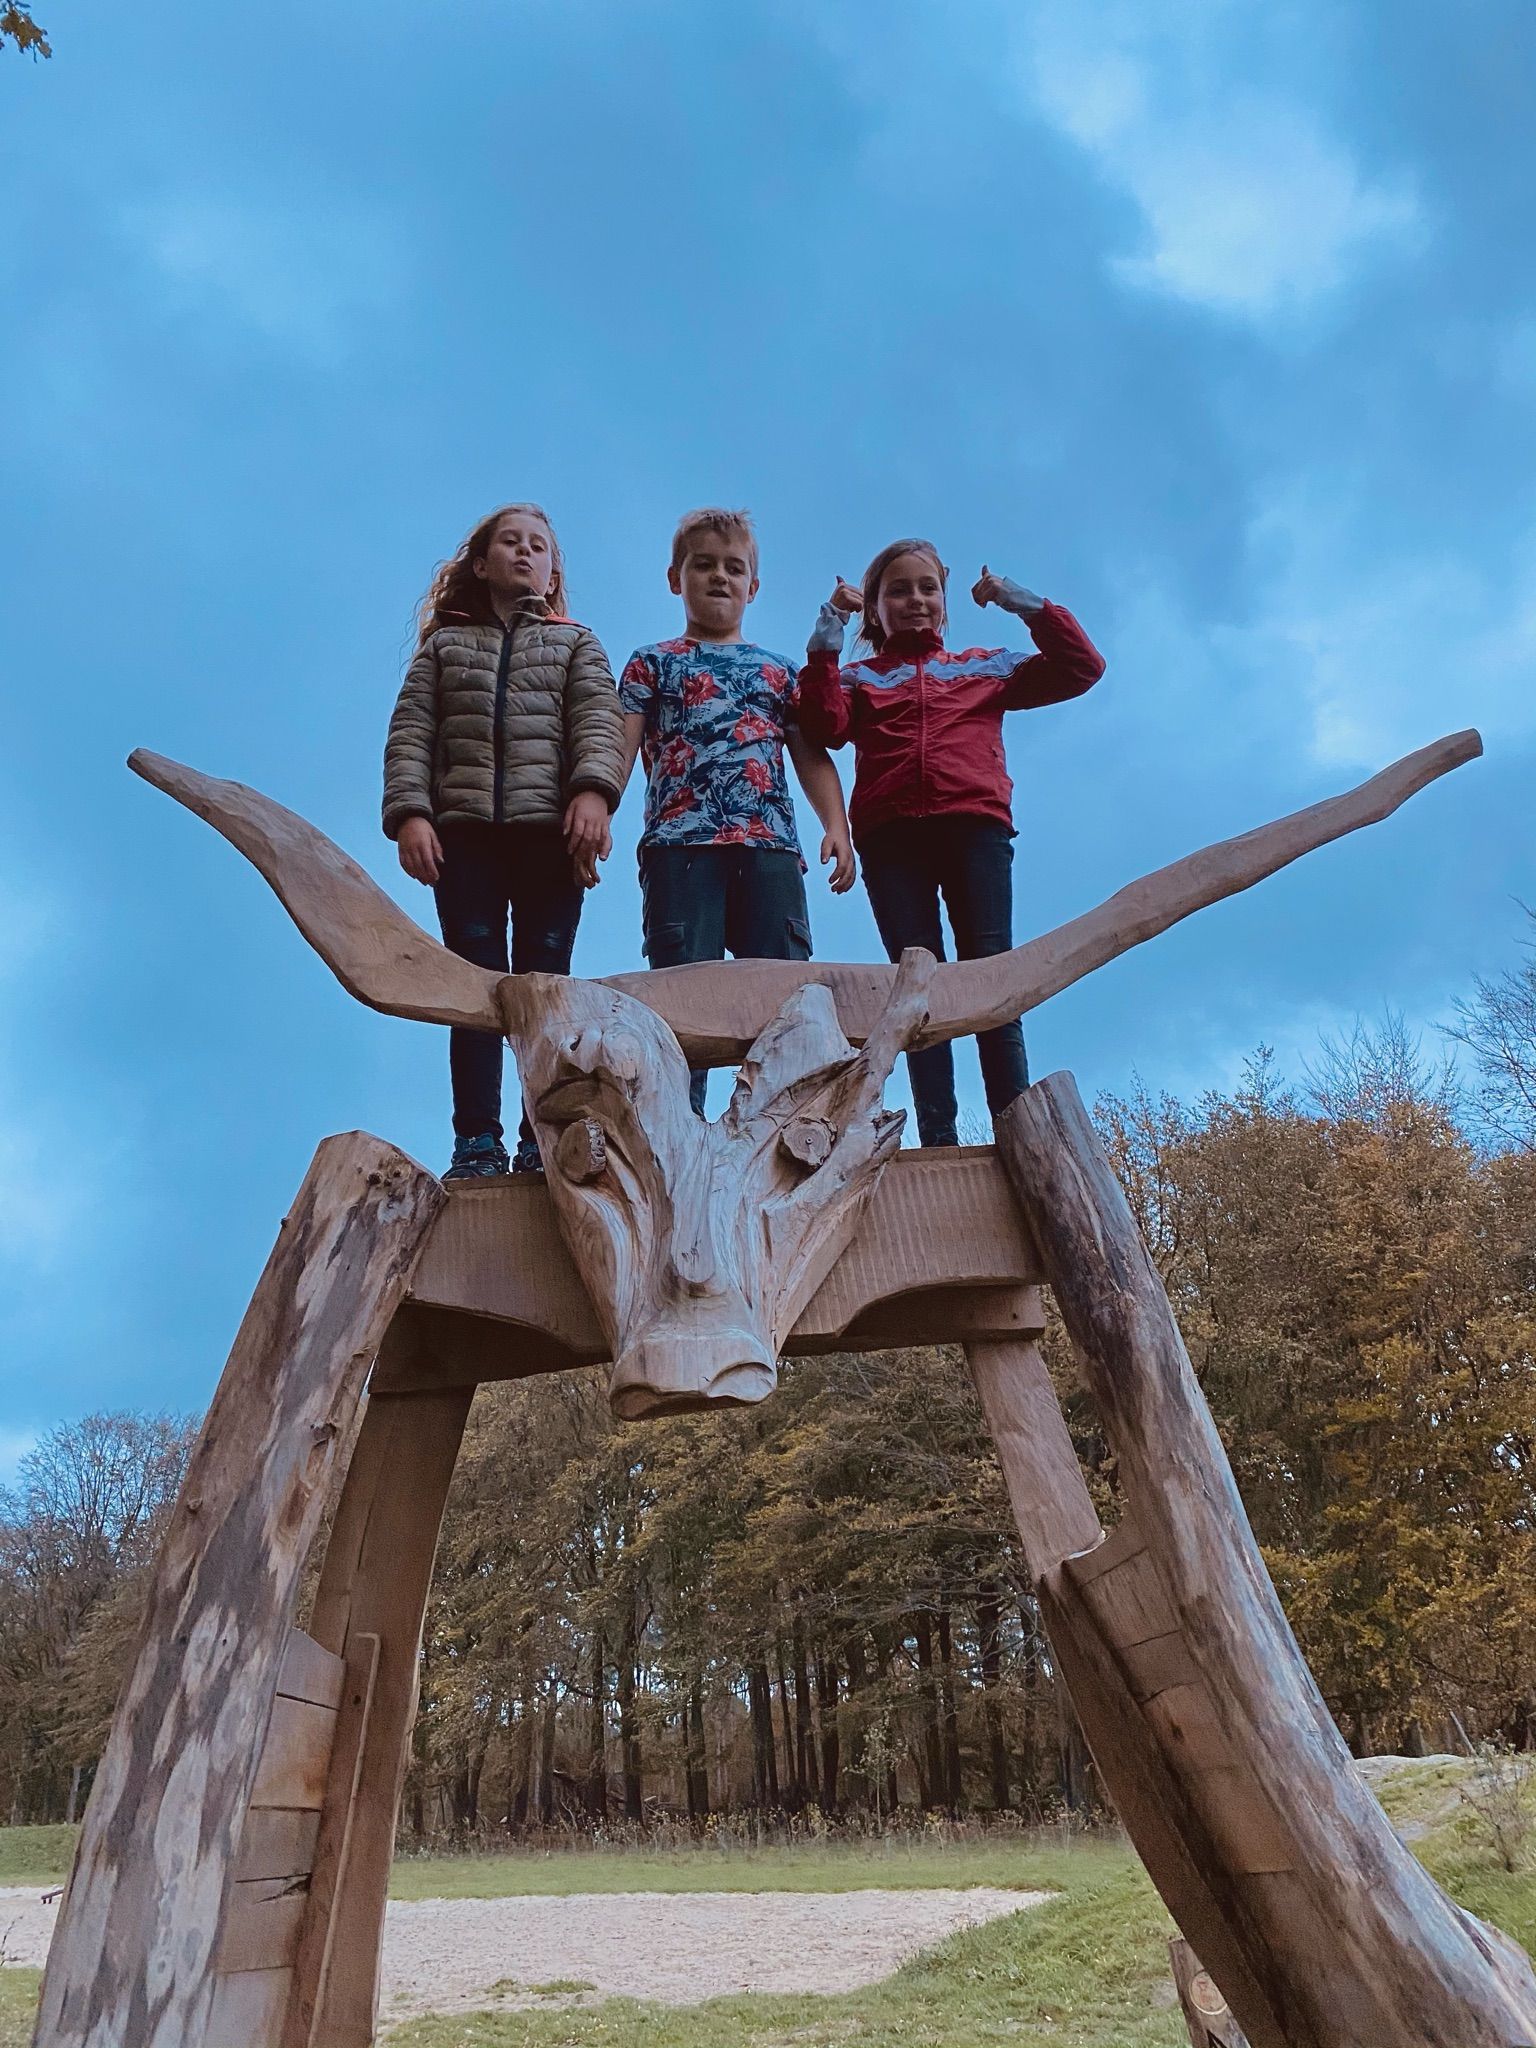 De stier is de mascotte van het landschapspark. ​ "Bulskampveld" komt van "bulnas campa", wat "stierenveld" betekent.